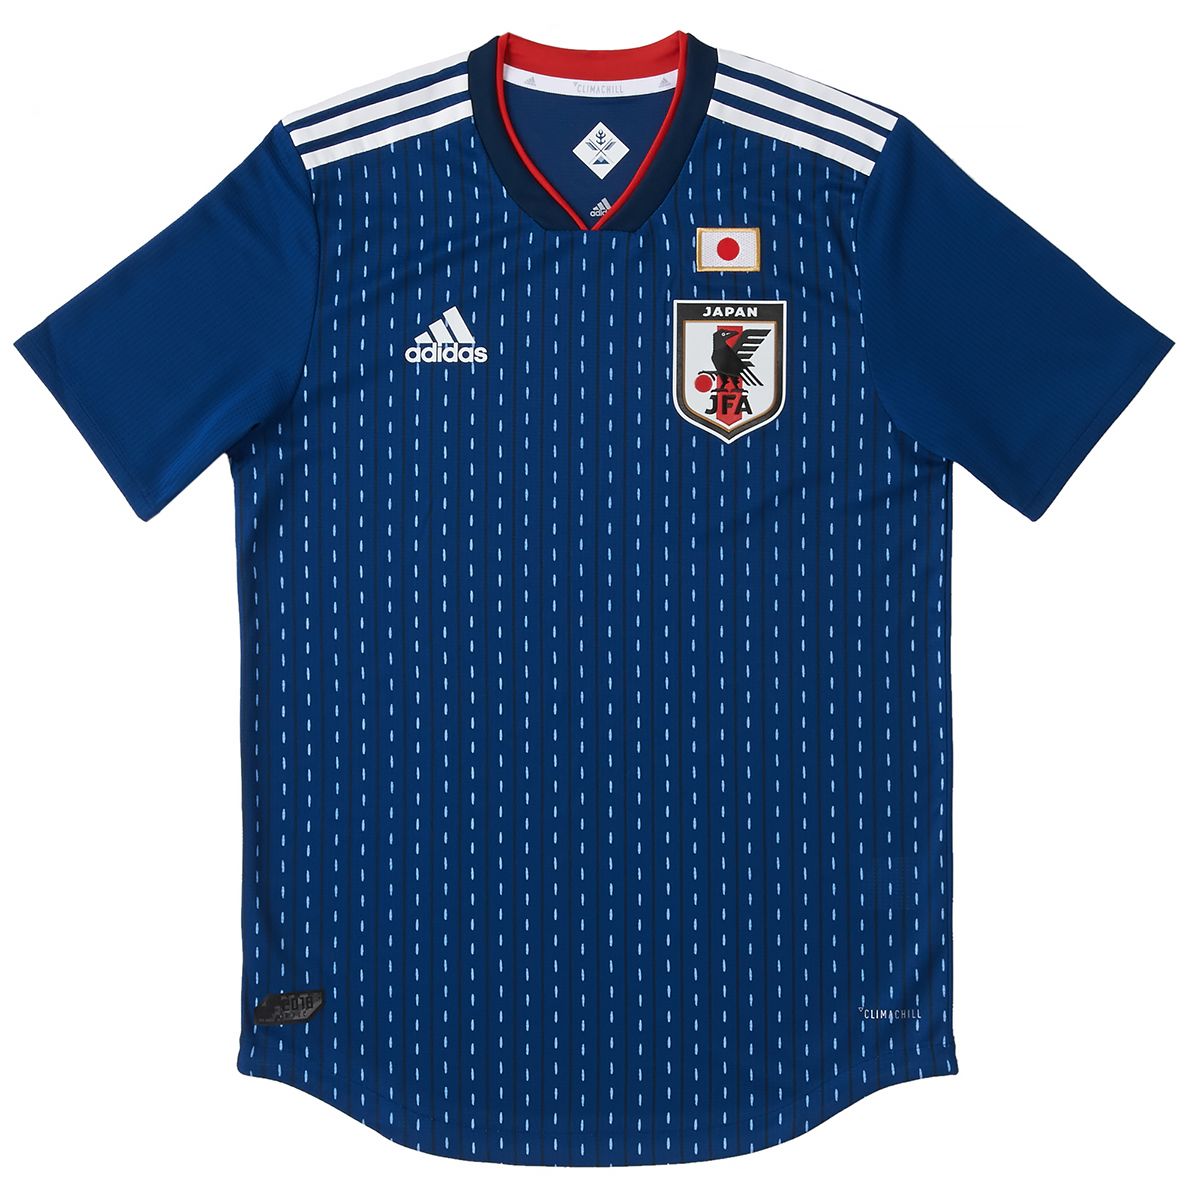 Clásico meditación Amanecer ORIGAMI, el concepto del nuevo uniforme de la selección japonesa de fútbol  para el mundial de Catar | Nippon.com